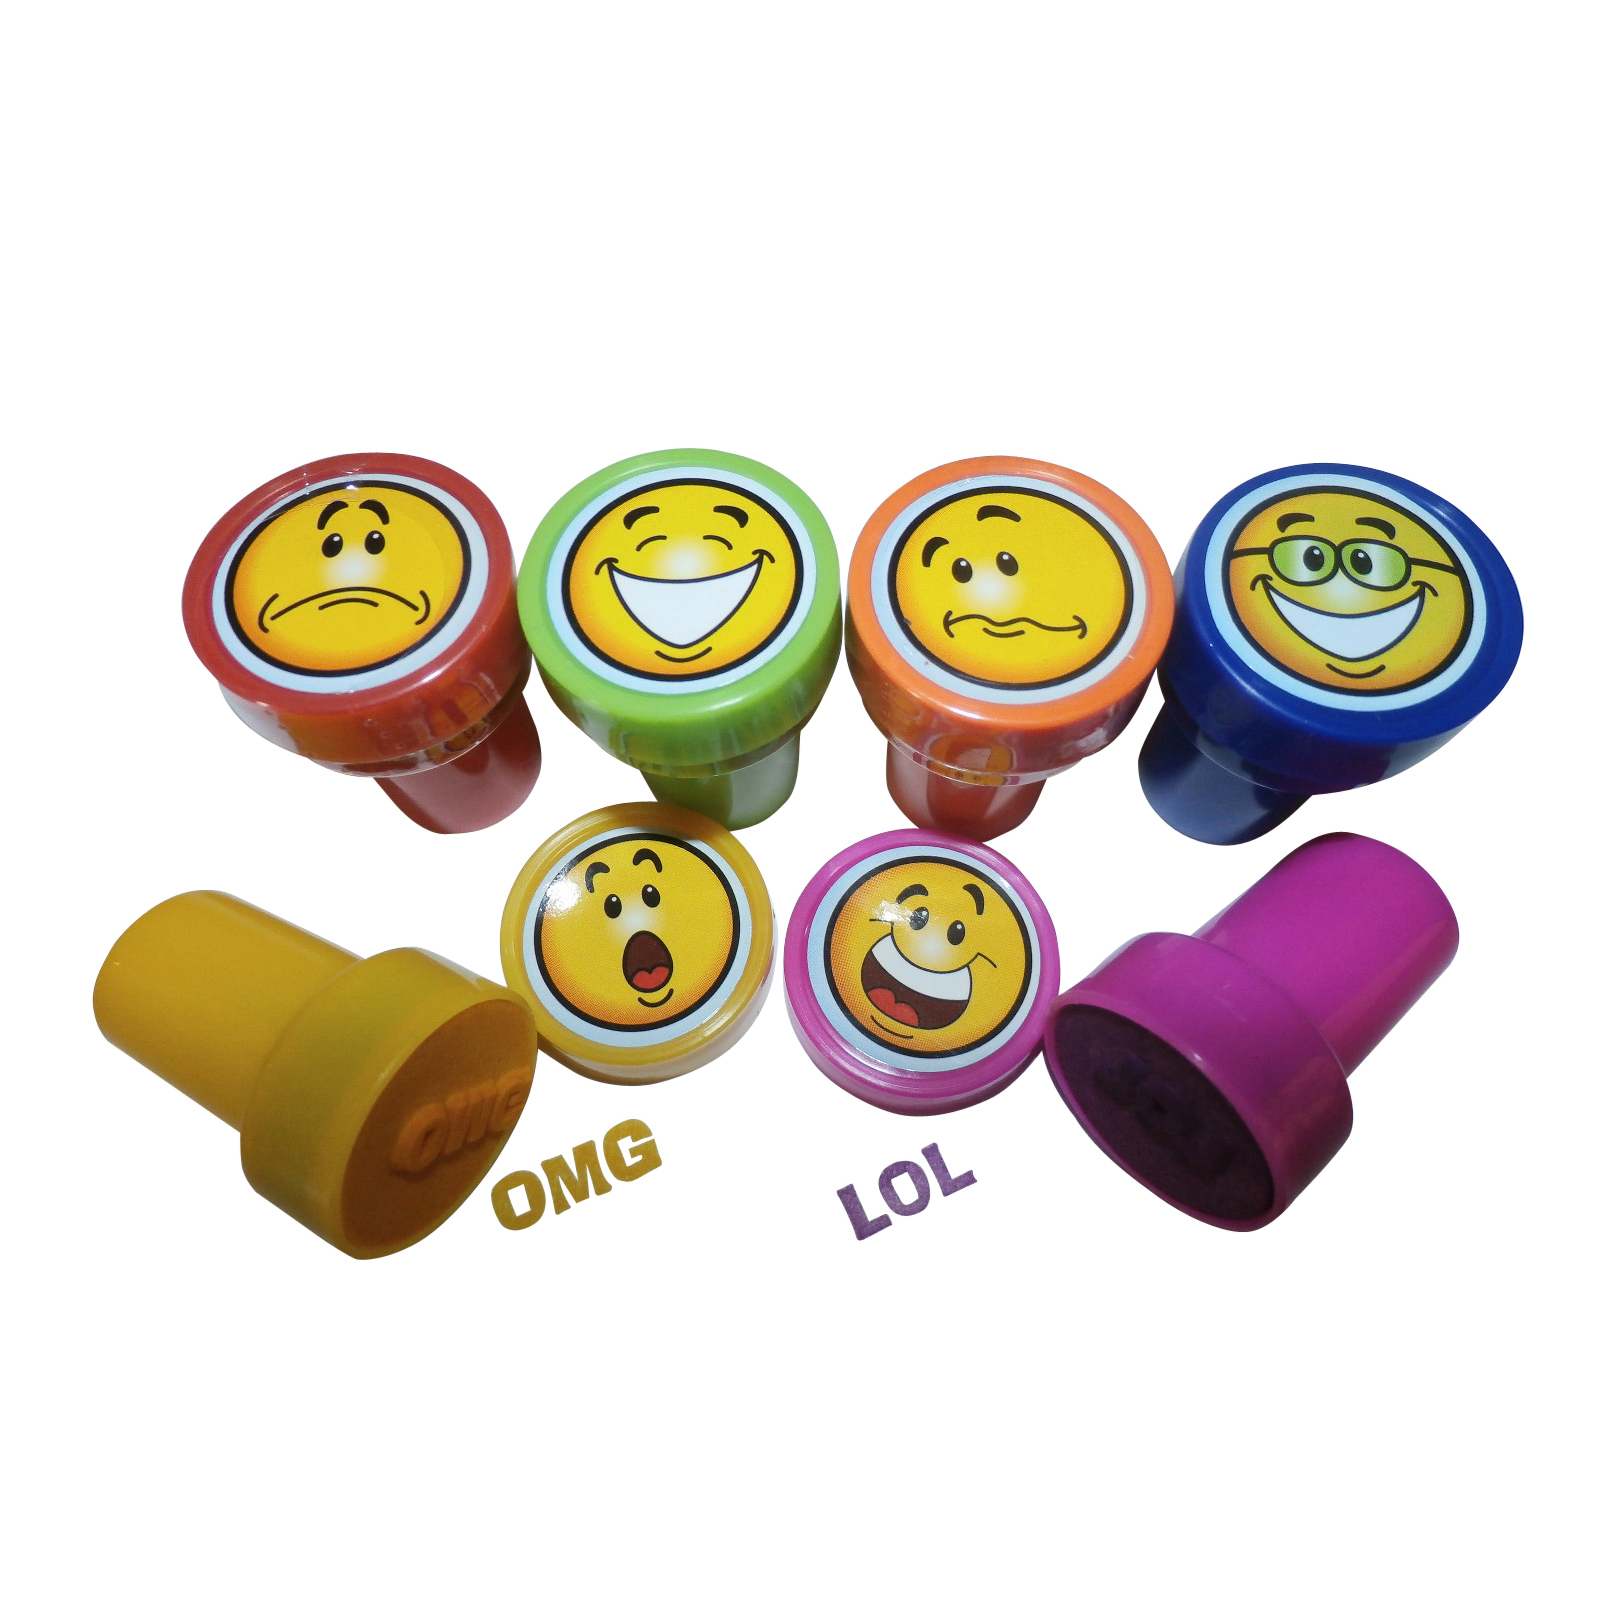 Round Children's Toy Stamp set